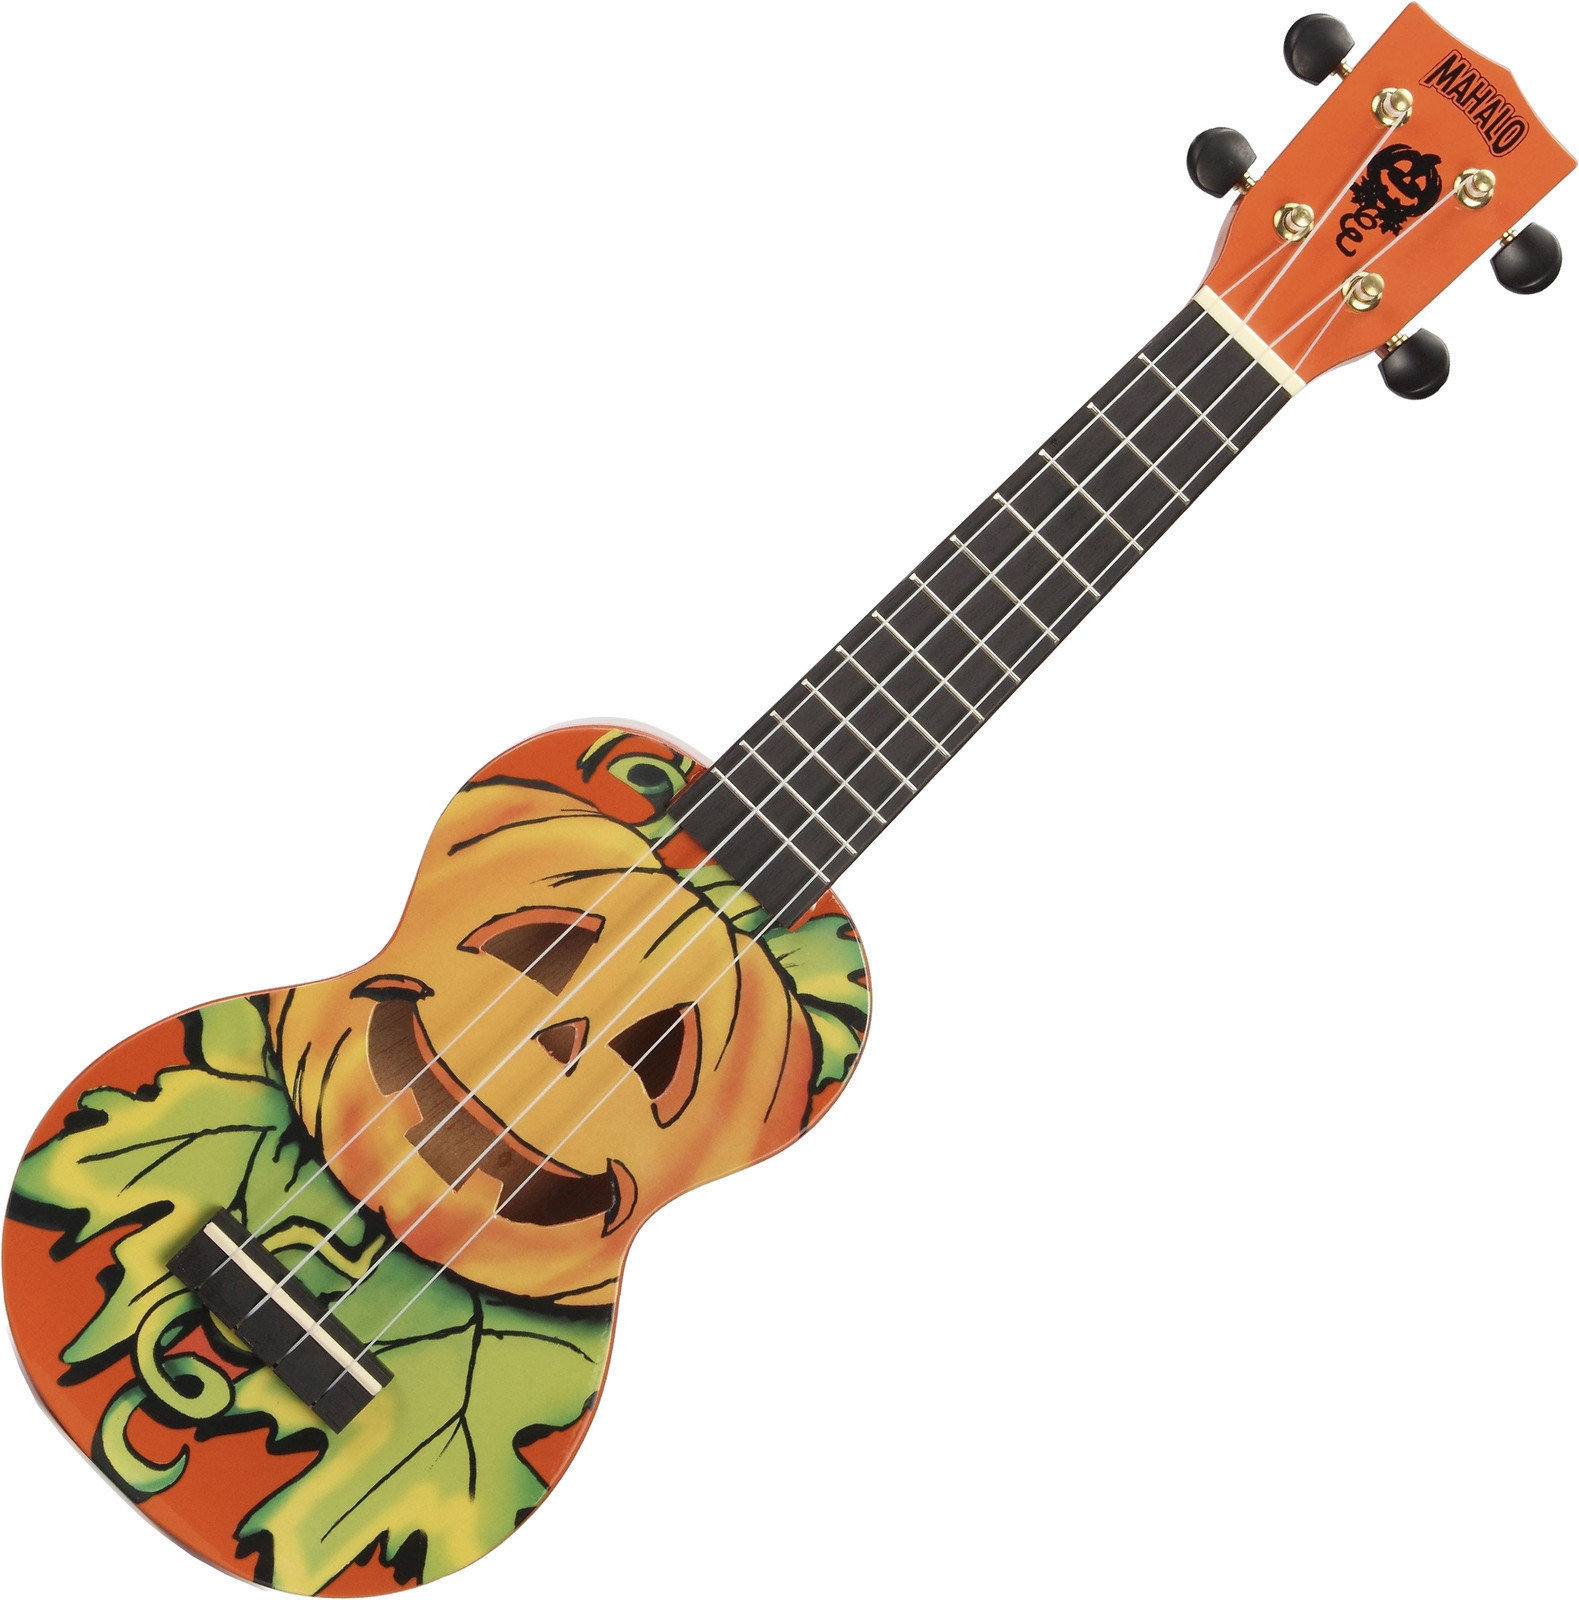 Szoprán ukulele Mahalo Mahaloween Szoprán ukulele Mahaloween Orange